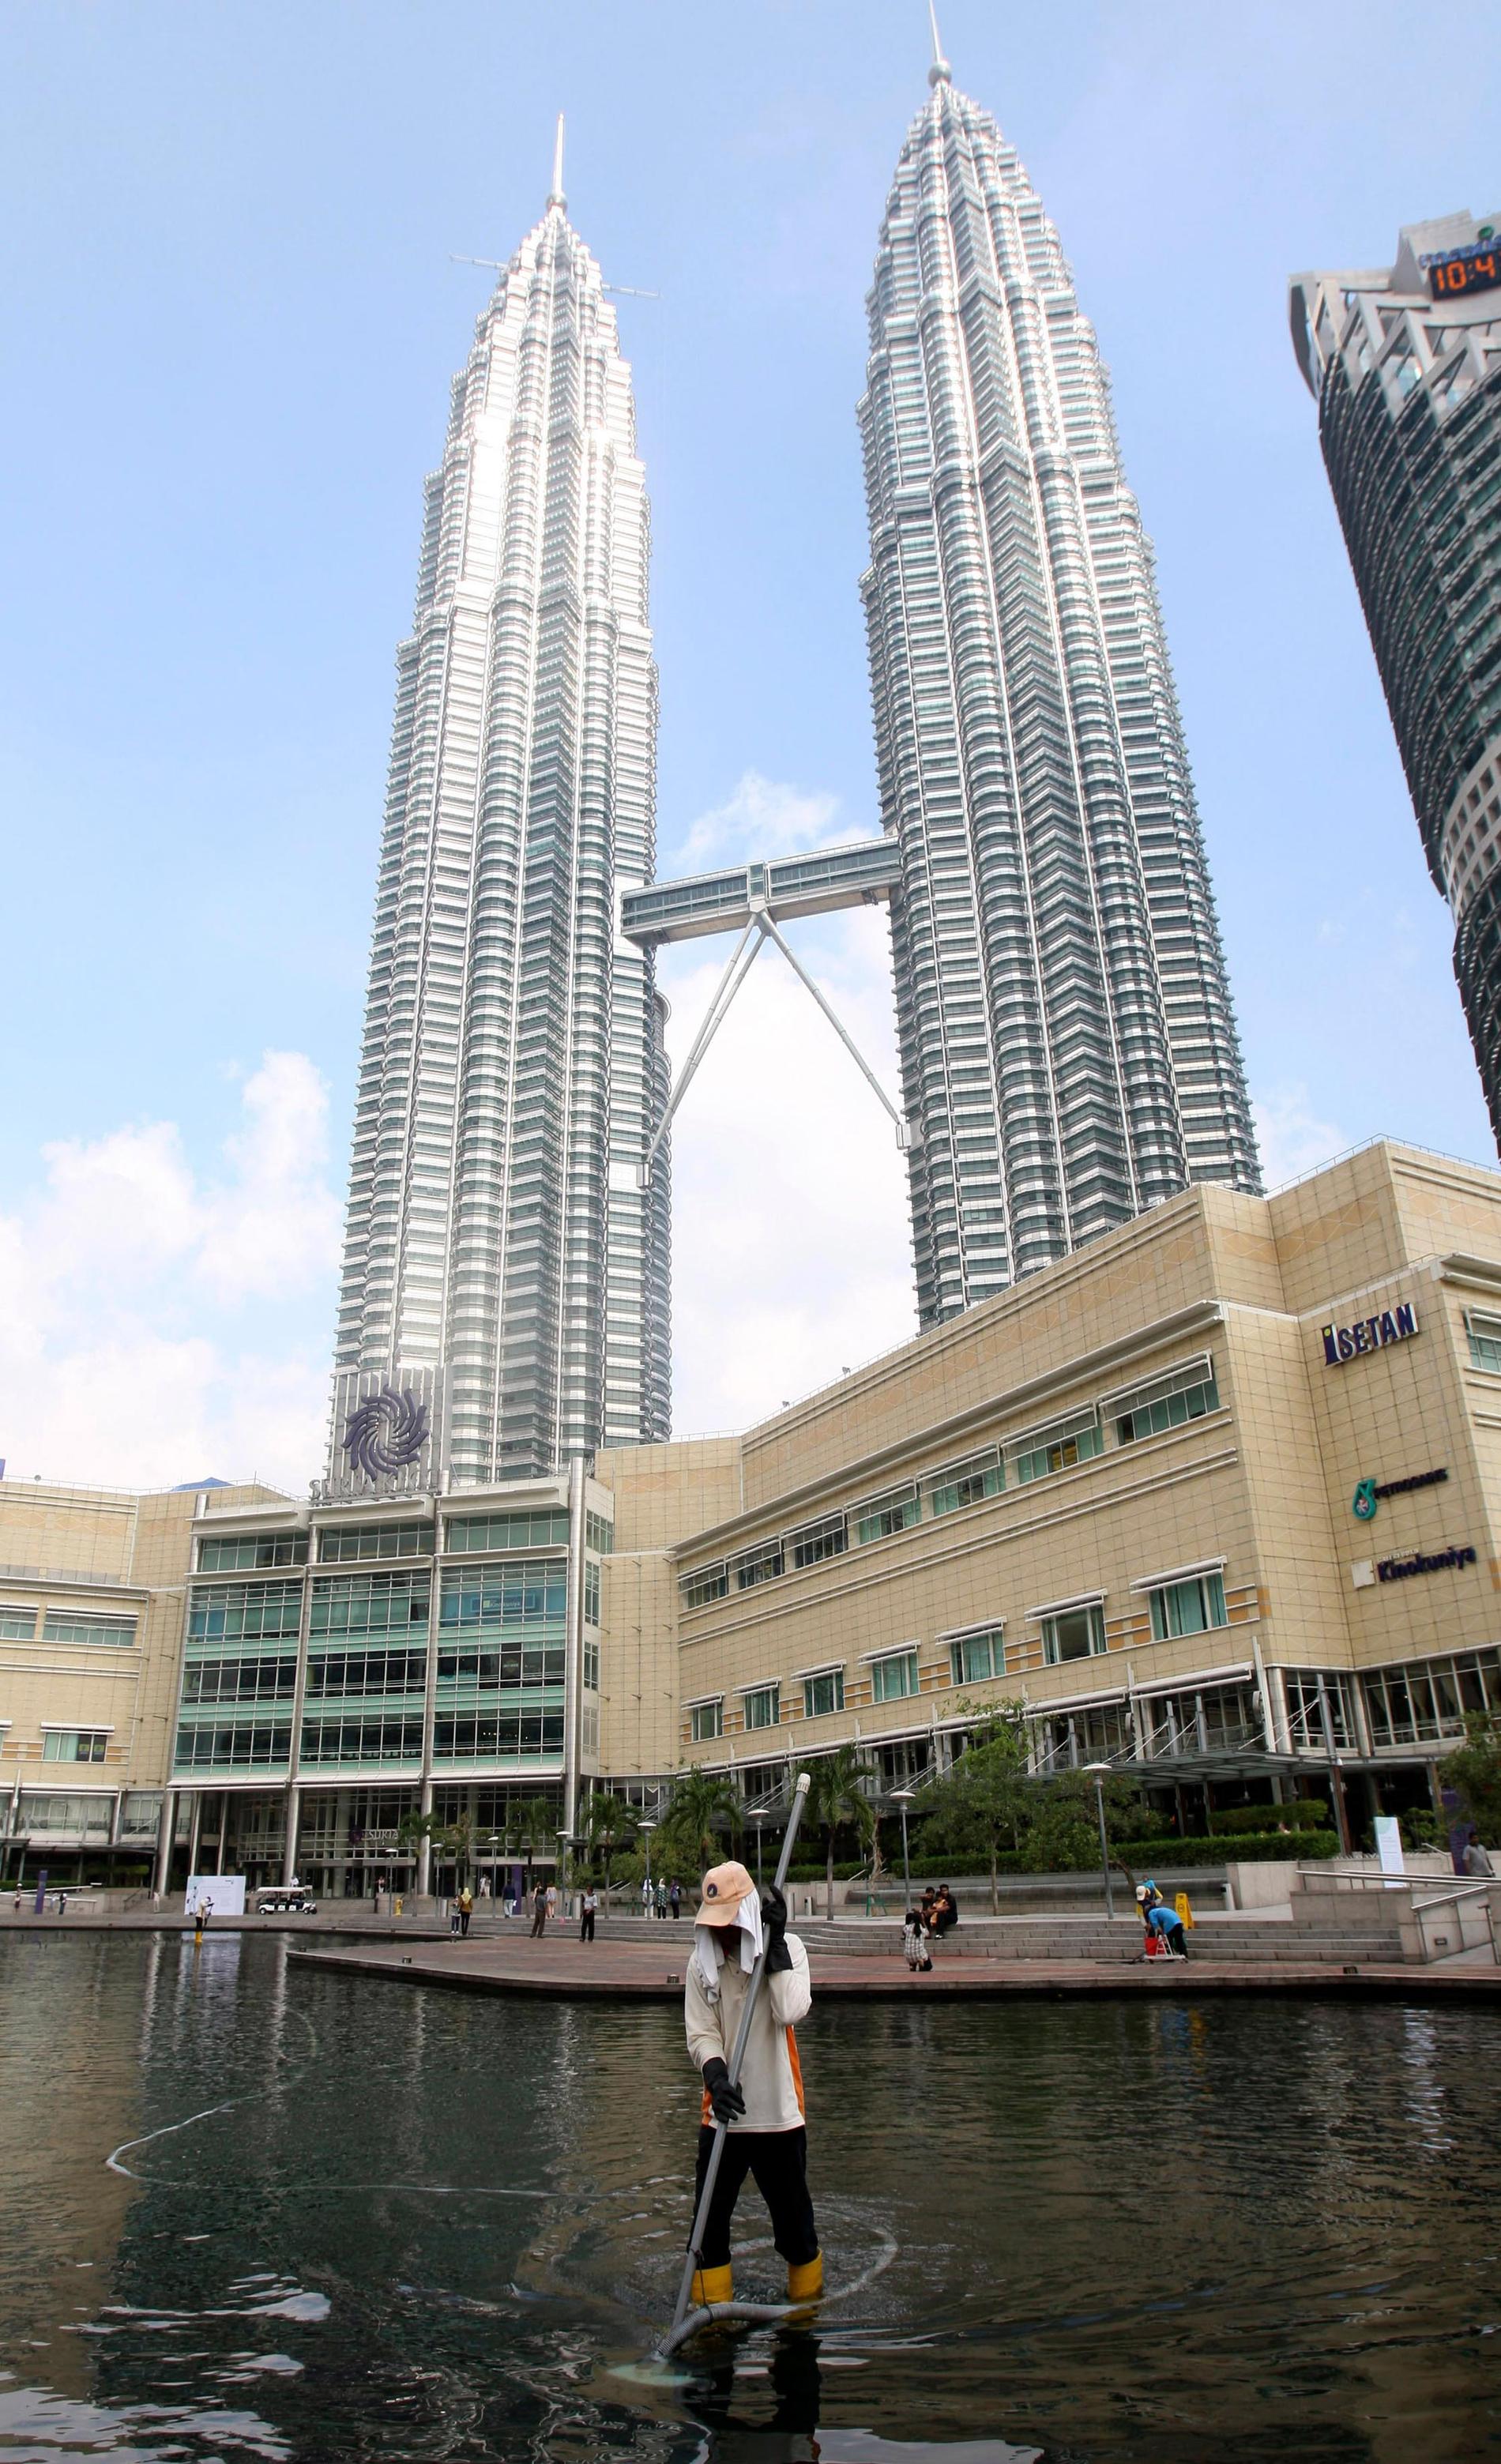 9. PETRONAS TWIN TOWERS, KUALA LUMPUR, MALAYSIA Tvillingtornen är numera ett av världens mest kända landmärken. Från 1996 till 2004 var det också världens högsta byggnad. Varje torn har 88 våningar och ”himmelsbron” som förbinder dem är också en säkerhetspryl – om det exempelvis brinner i det ena tornet ska man kunna ta sig över till det andra. Arikitekten heter César Pelli. Höjd: 452 meter. Klara: 1996. Byggkostnad: 11,2 miljarder kronor. Flyg till Malaysia - kolla vad det kostar här.